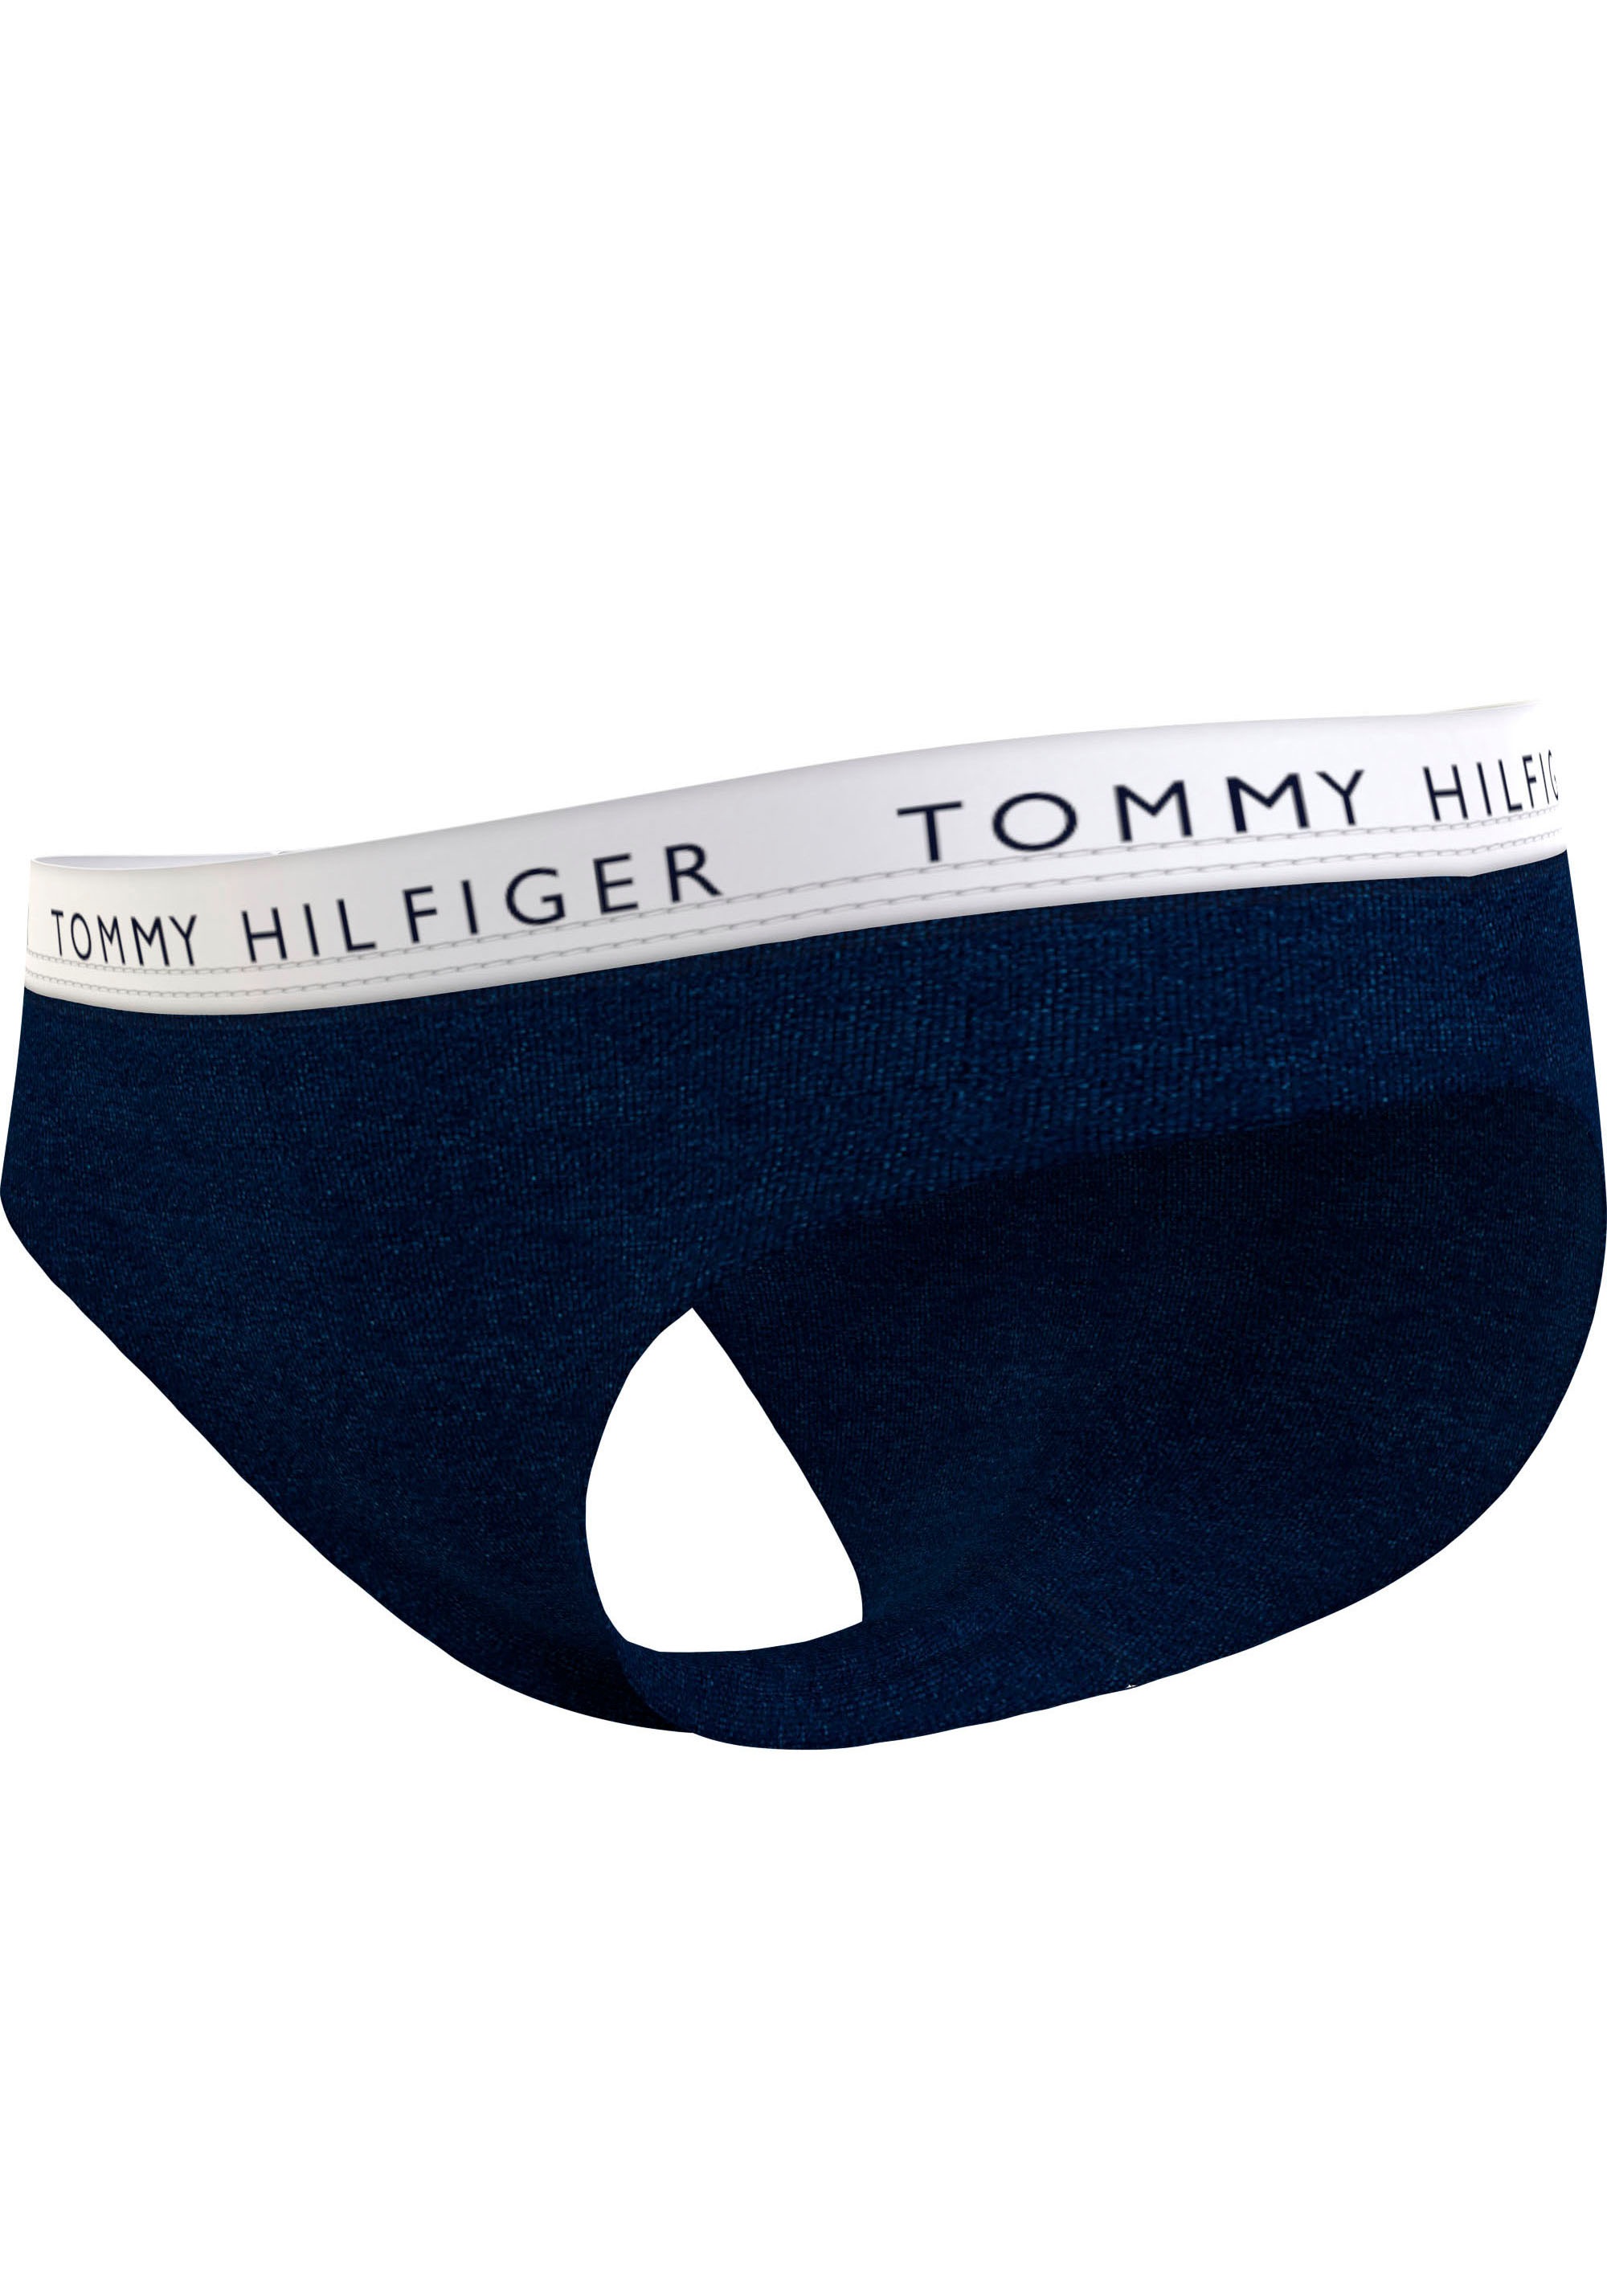 Underwear Bikinislip, Online im (Packung, mit OTTO 7 Hilfiger Logobund 7er-Pack), St., Hilfiger Tommy Shop Tommy